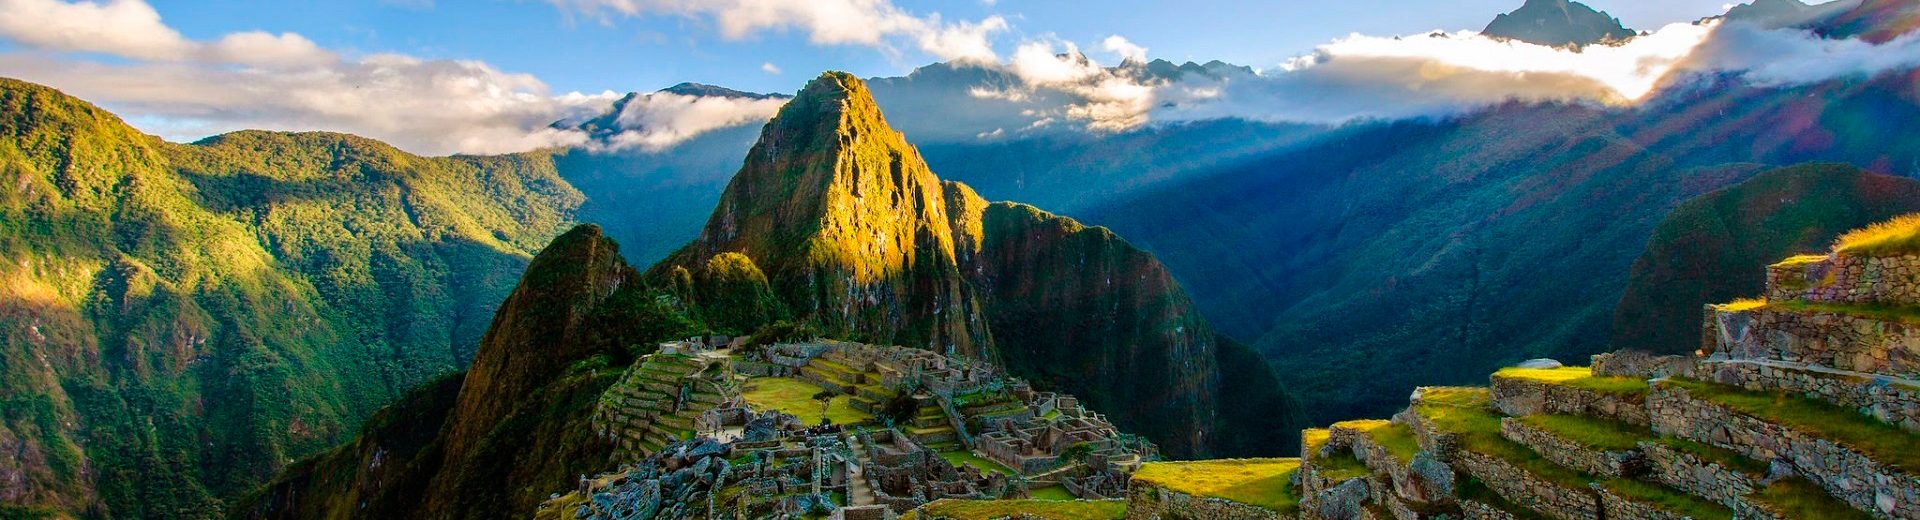 O que fazer no Peru? Conhecer a belíssima Machu Picchu